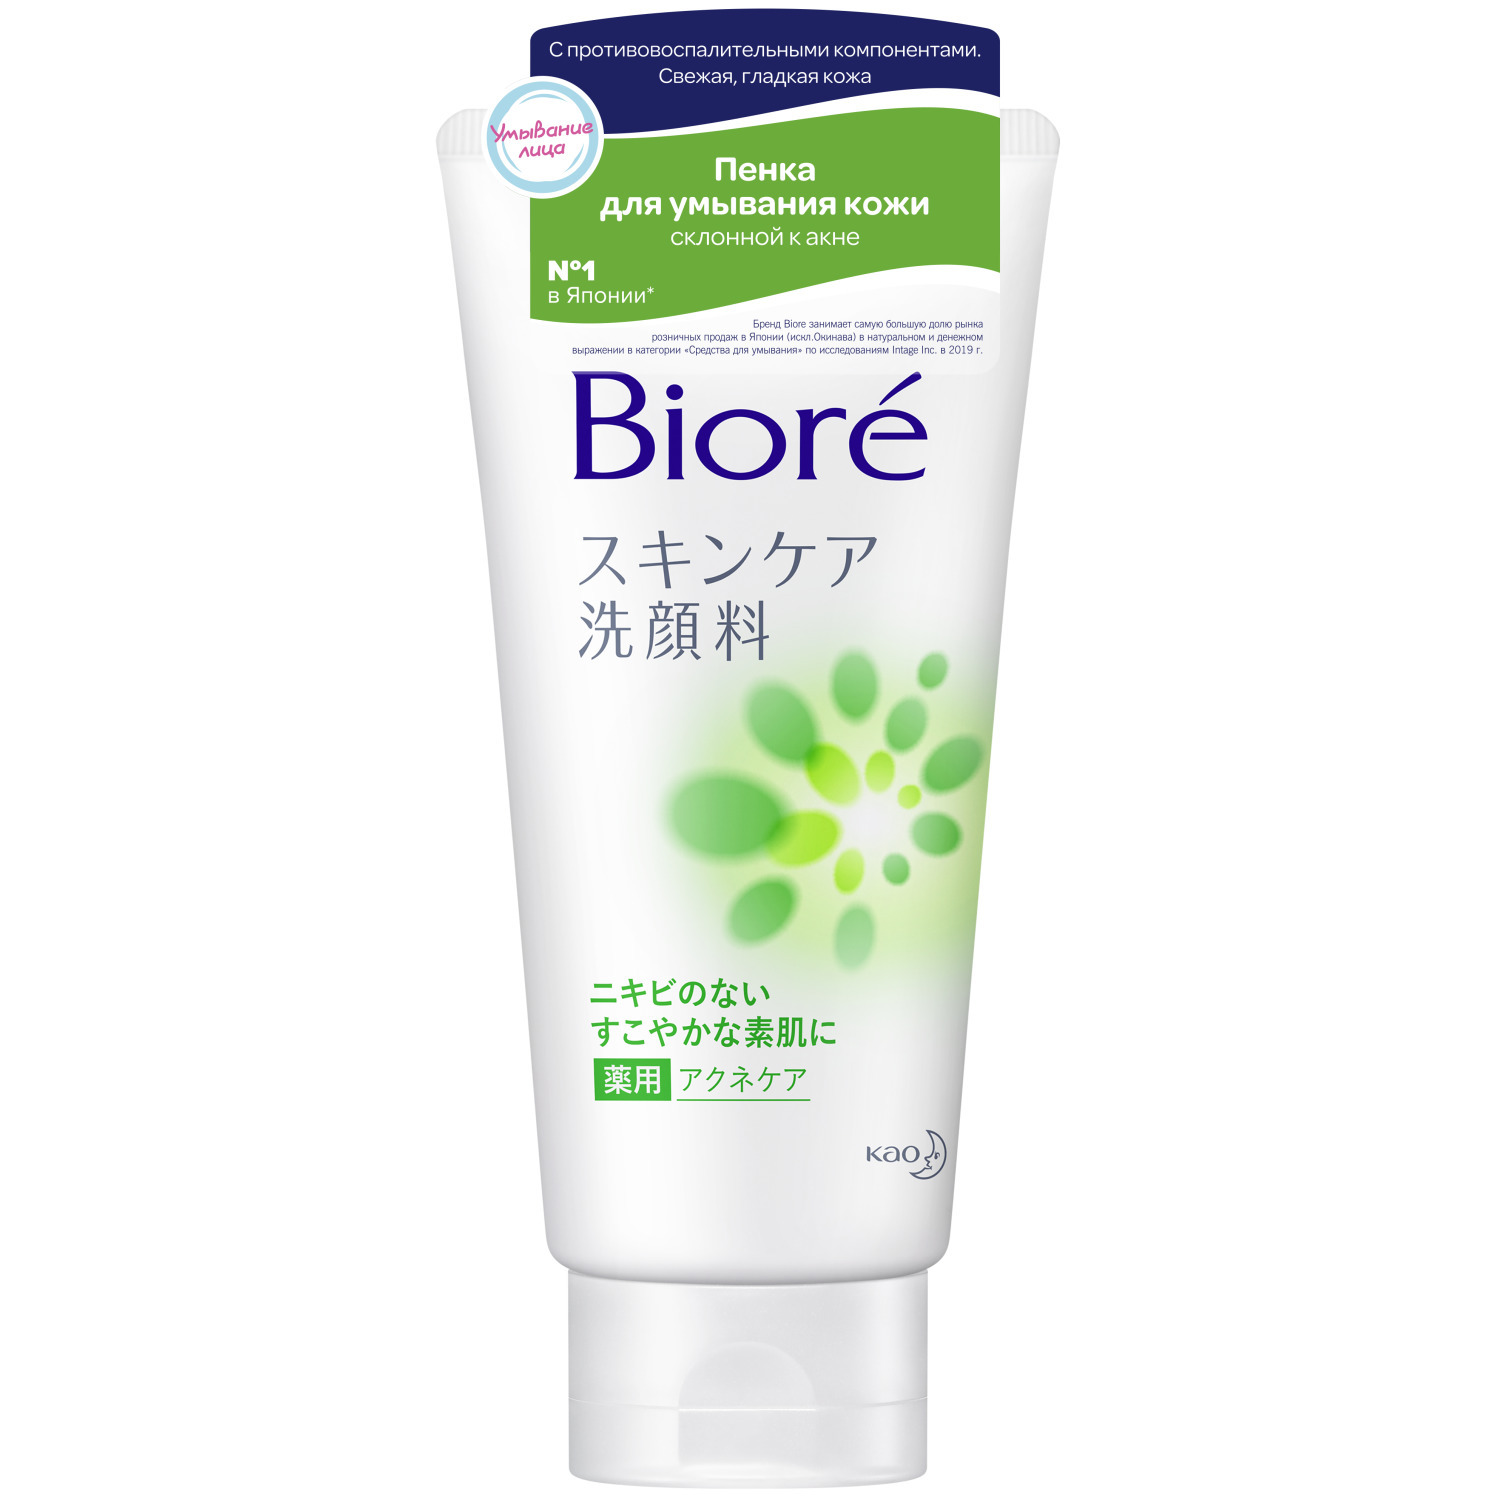 Купить Biore Пенка для умывания кожи склонной к акне, 130 мл (Biore, Средства для очищения и демакияжа), Япония